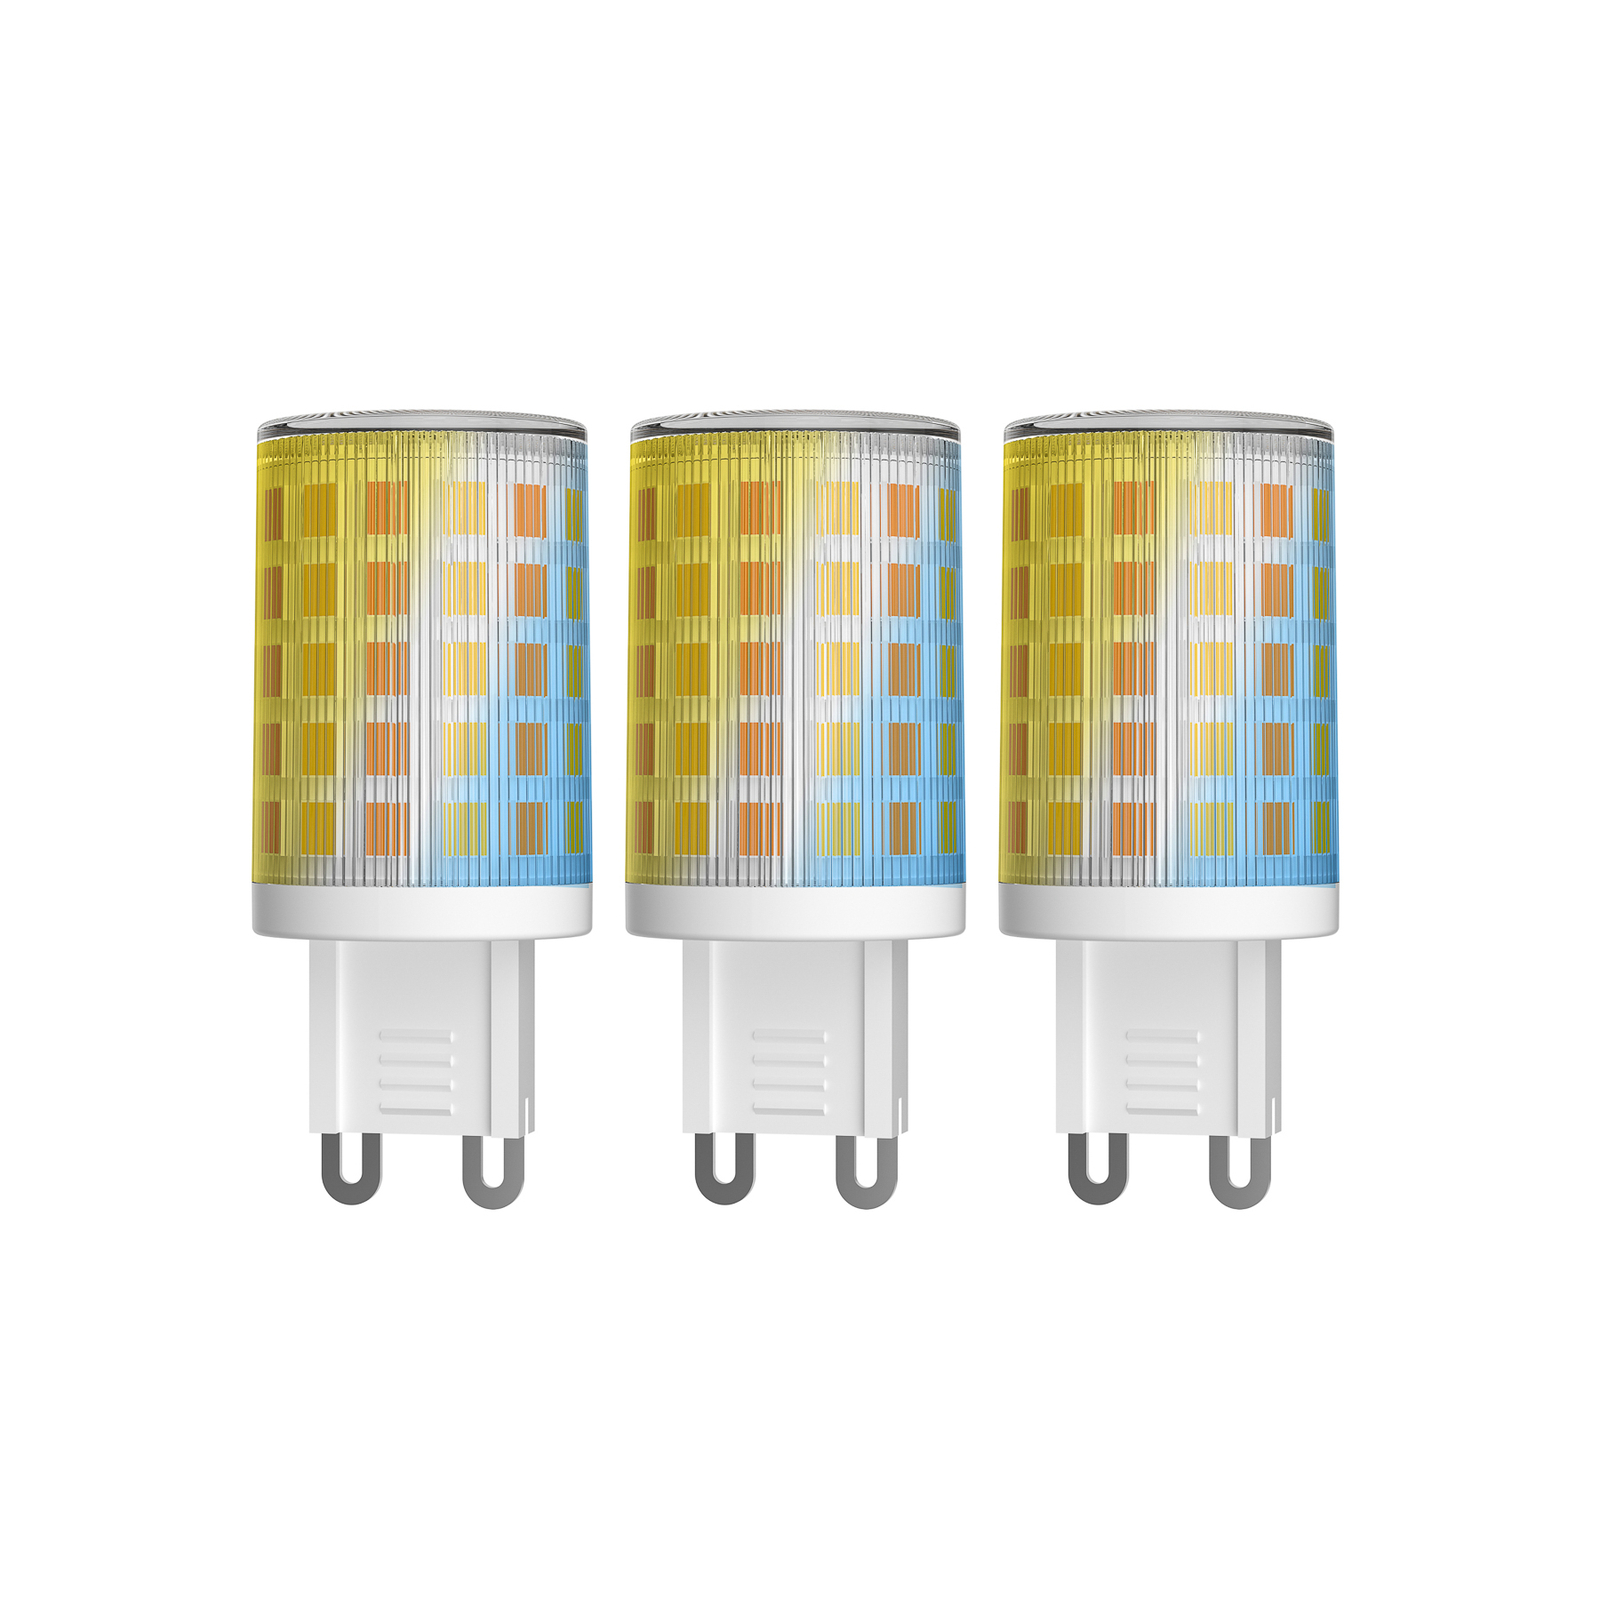 Prios LED G9 stiftlampa 2,5W WLAN CCT klar 3-pack